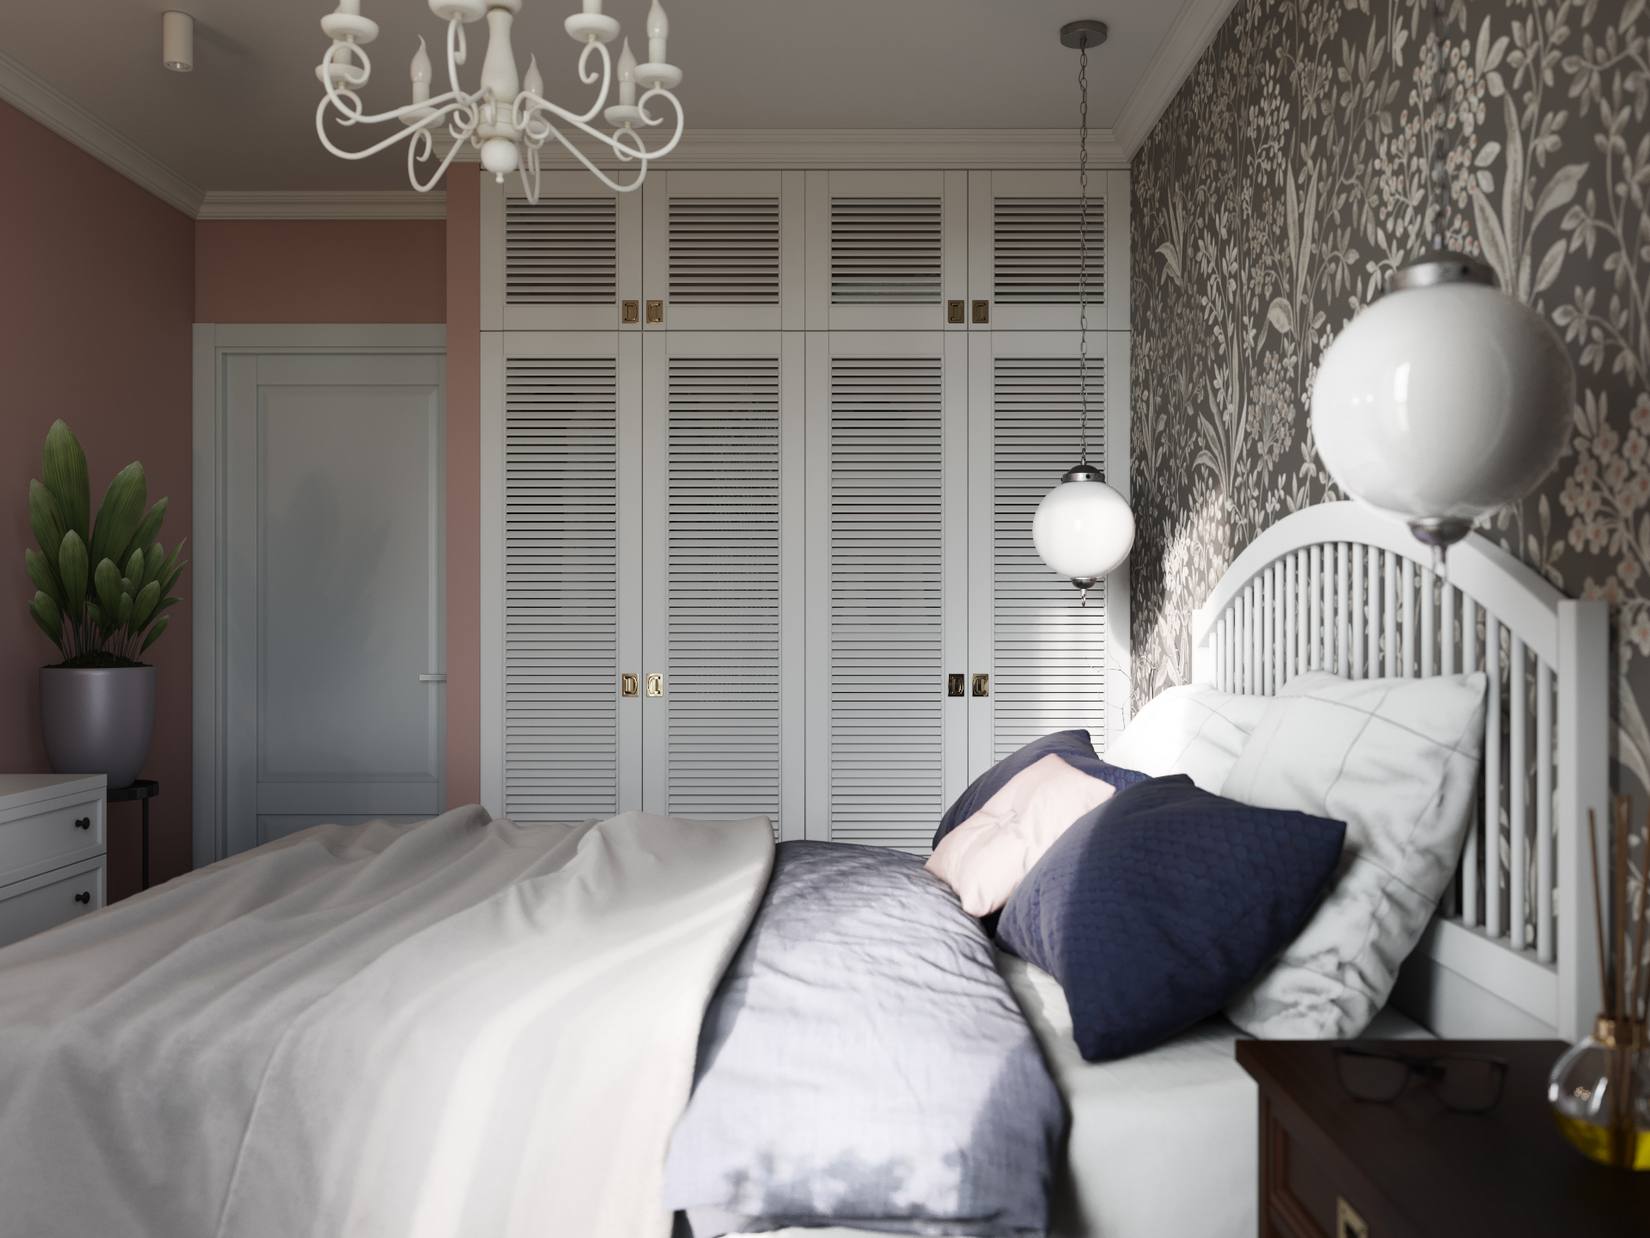 Góc phải giường ngủ là hệ thống tủ lưu trữ quần áo kịch trần tương tự như khu vực phòng khách. Bức tường sơn màu hồng phấn đối diện đầu giường sử dụng giấy dán họa tiết hoa lá tạo nên sự tương phản nhẹ nhàng.